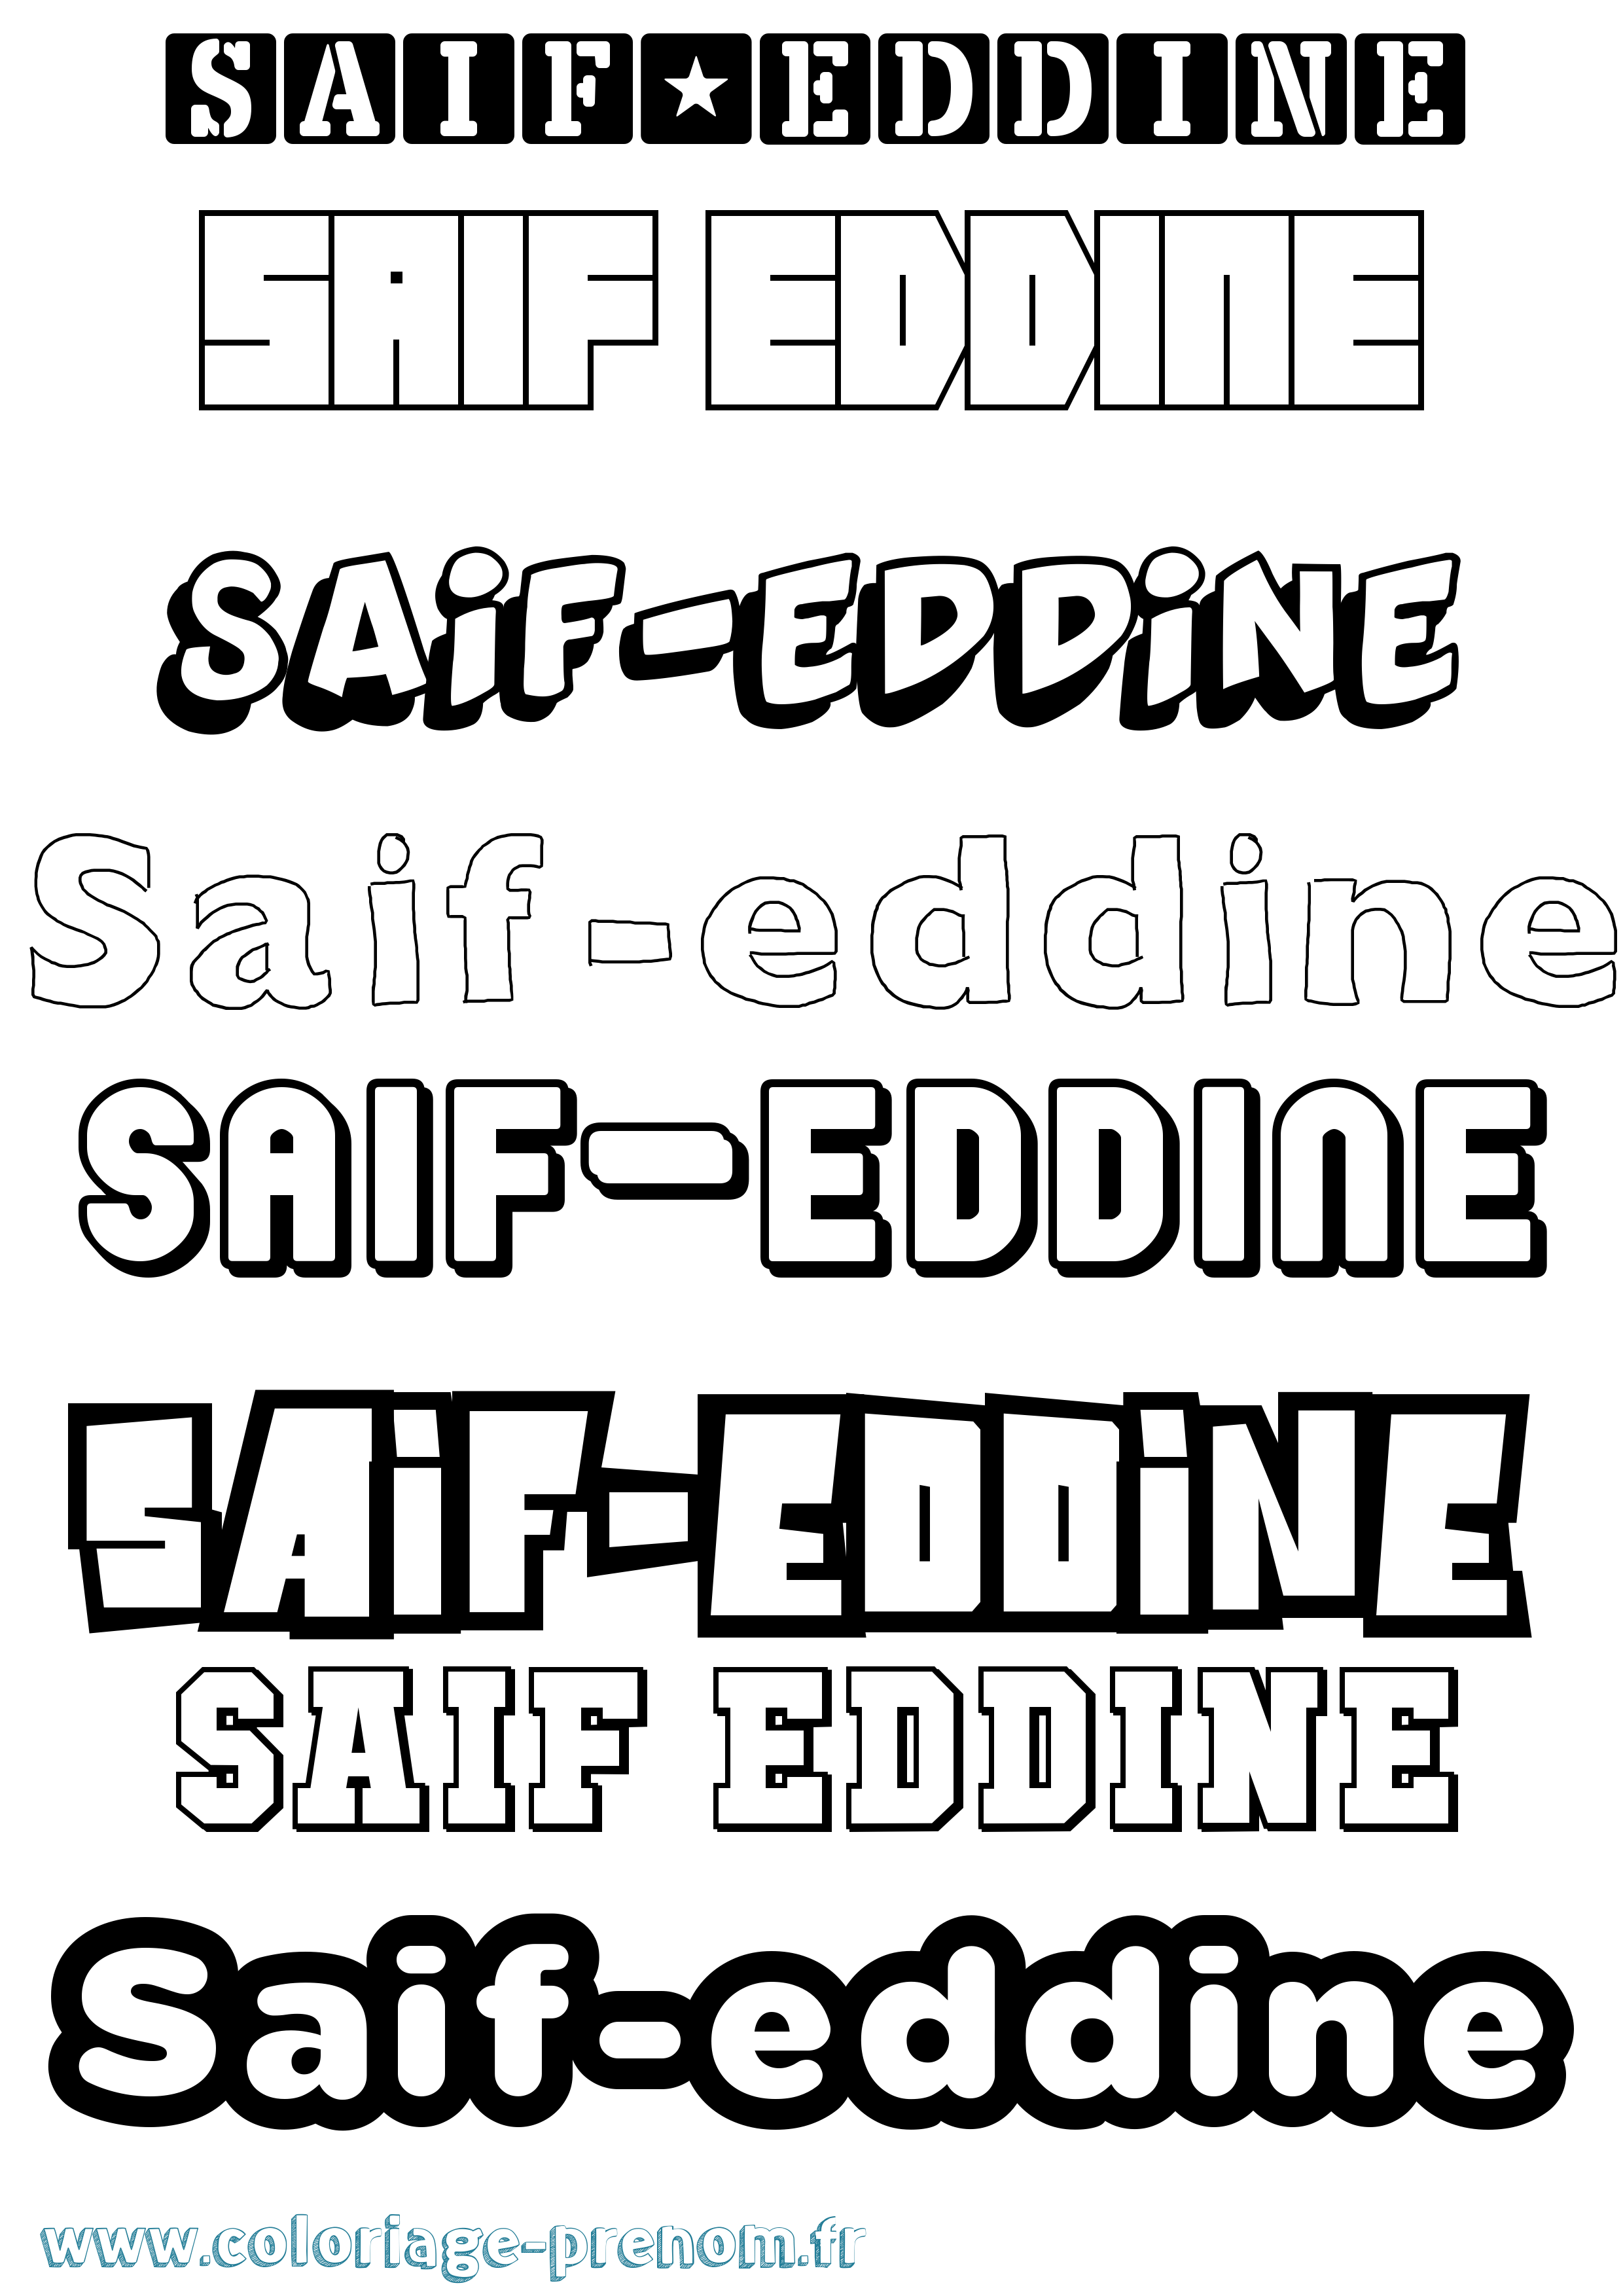 Coloriage prénom Saif-Eddine Simple